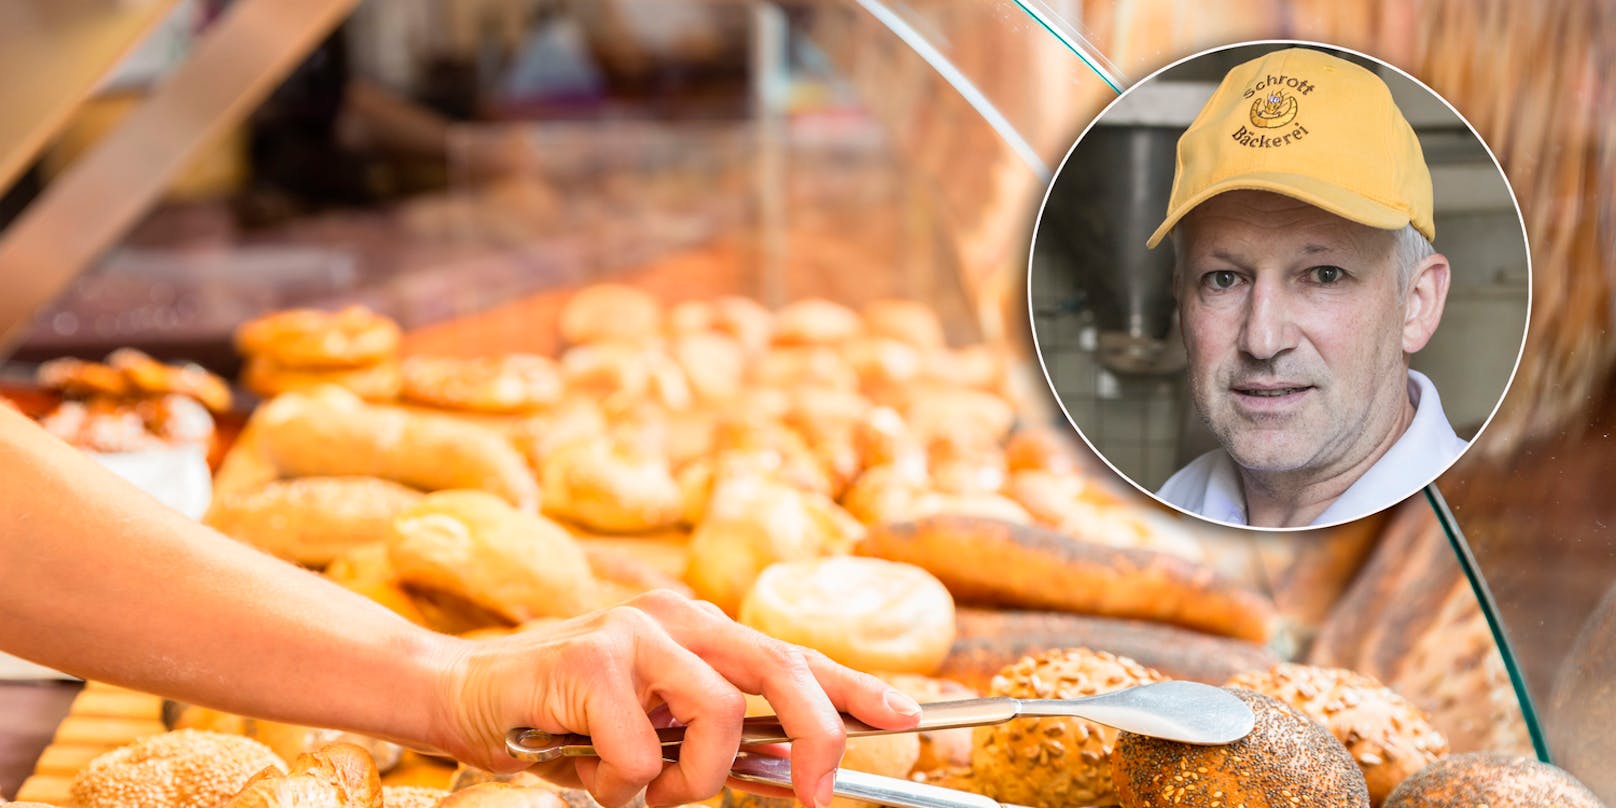 "Brot wird leider teurer", bedauert der Wiener Bäcker Josef Schrott.